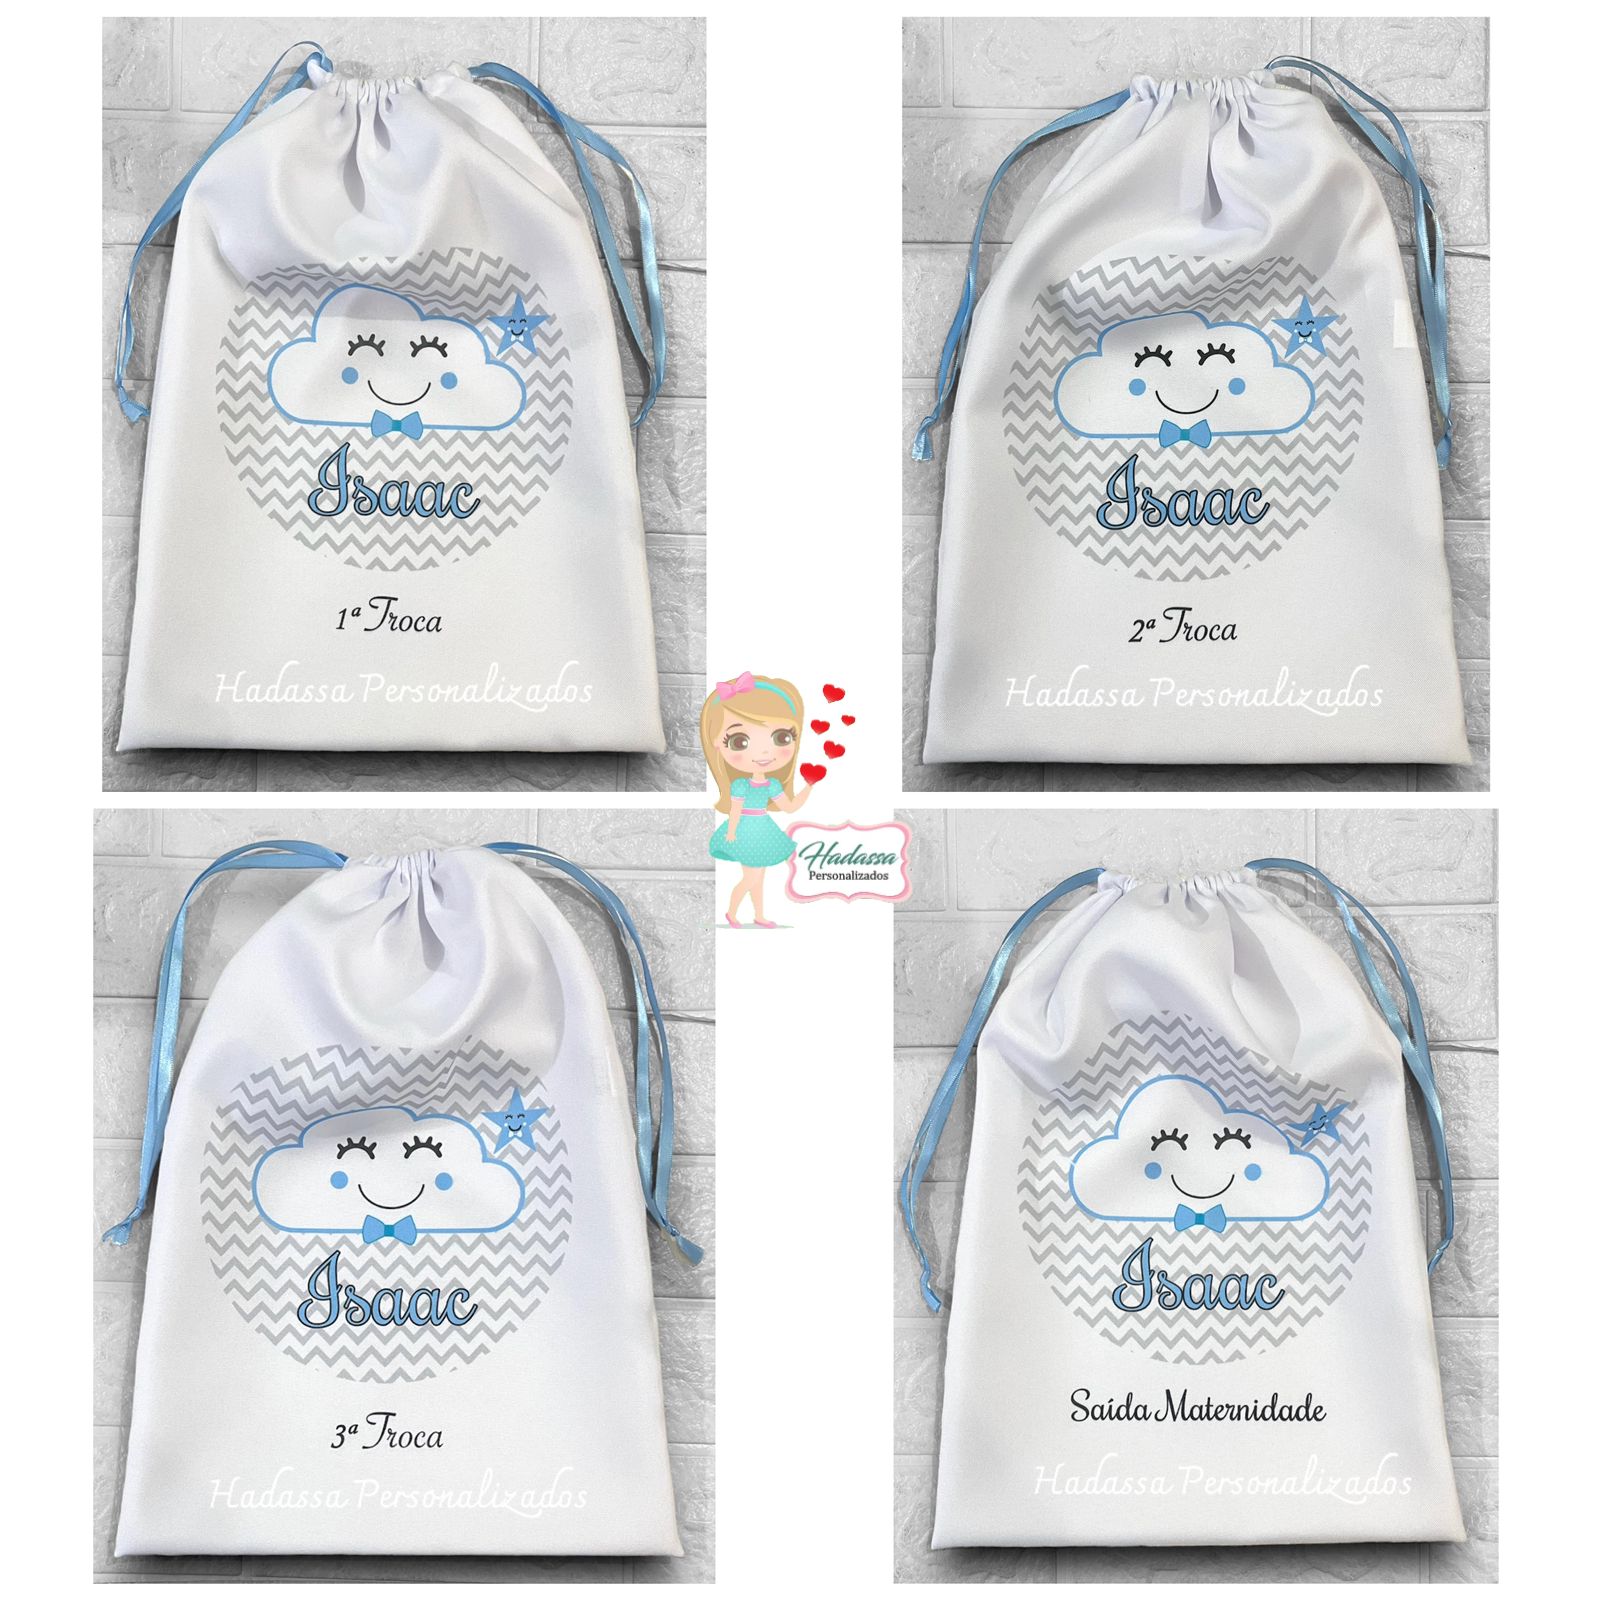 Saquinho - sacolinha - para roupinha de bebê - Maternidade - Hadassa  Personalizados